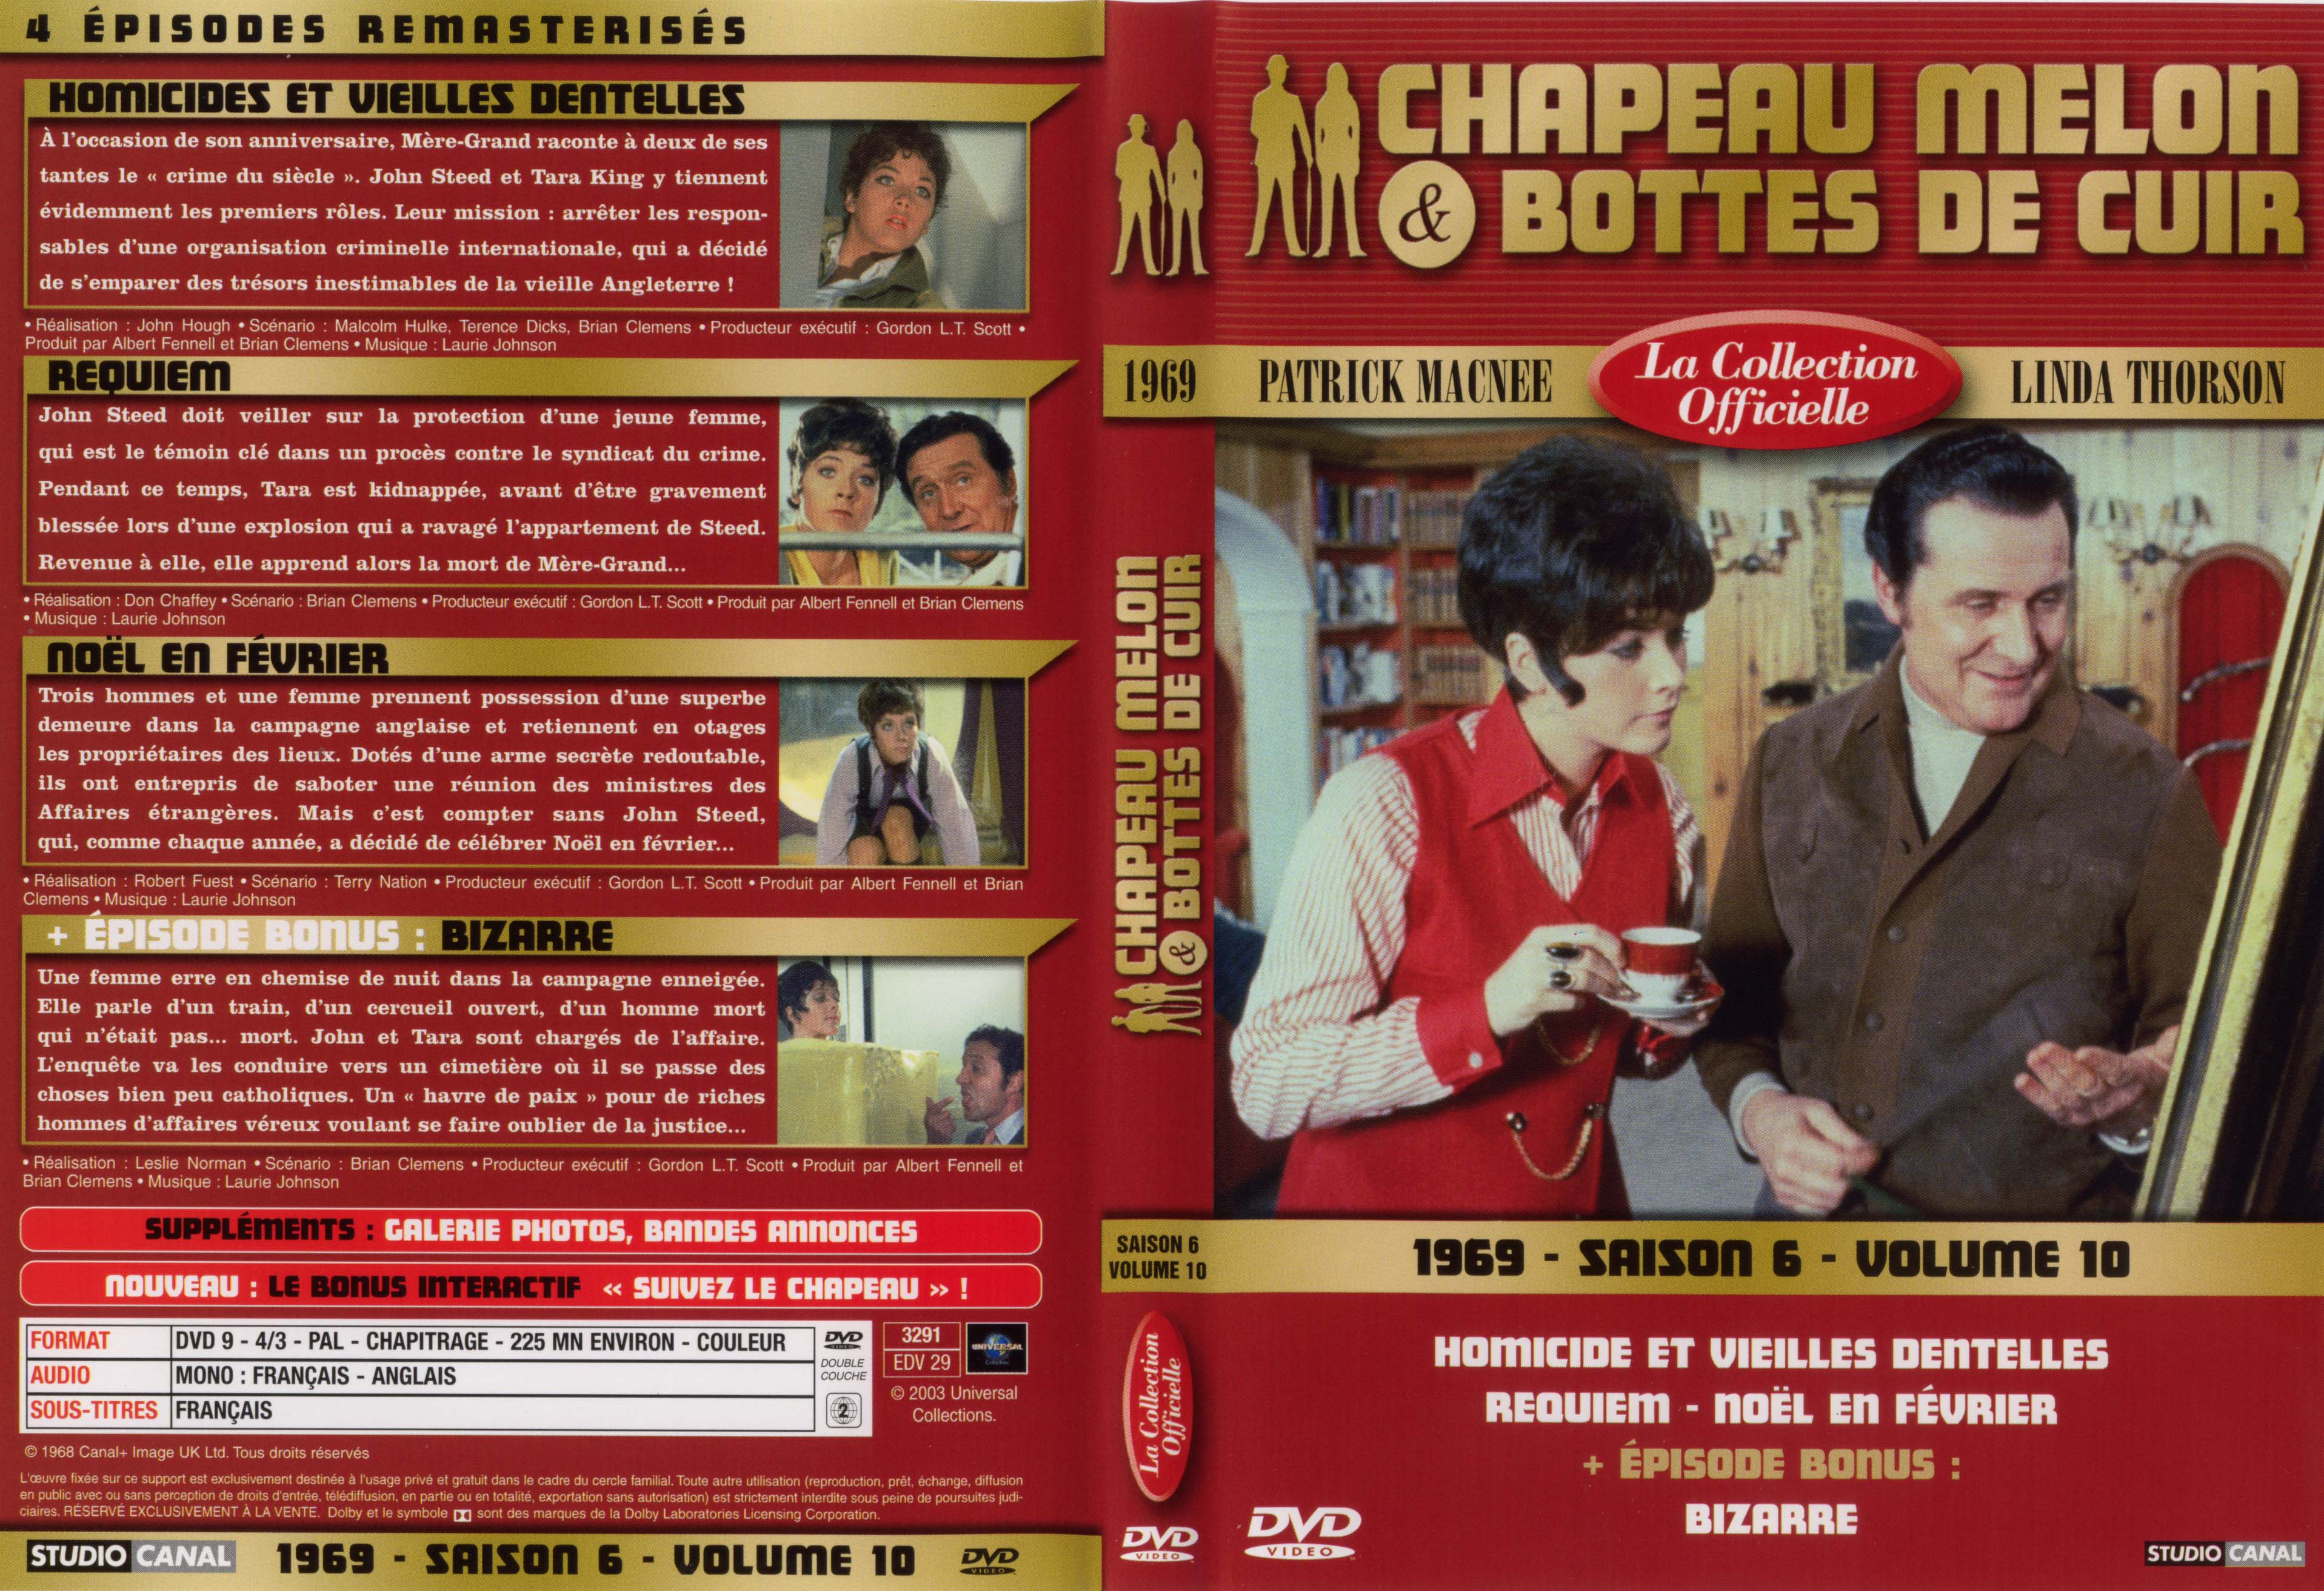 Jaquette DVD Chapeau melon et bottes de cuir 1969 saison 6 vol 10